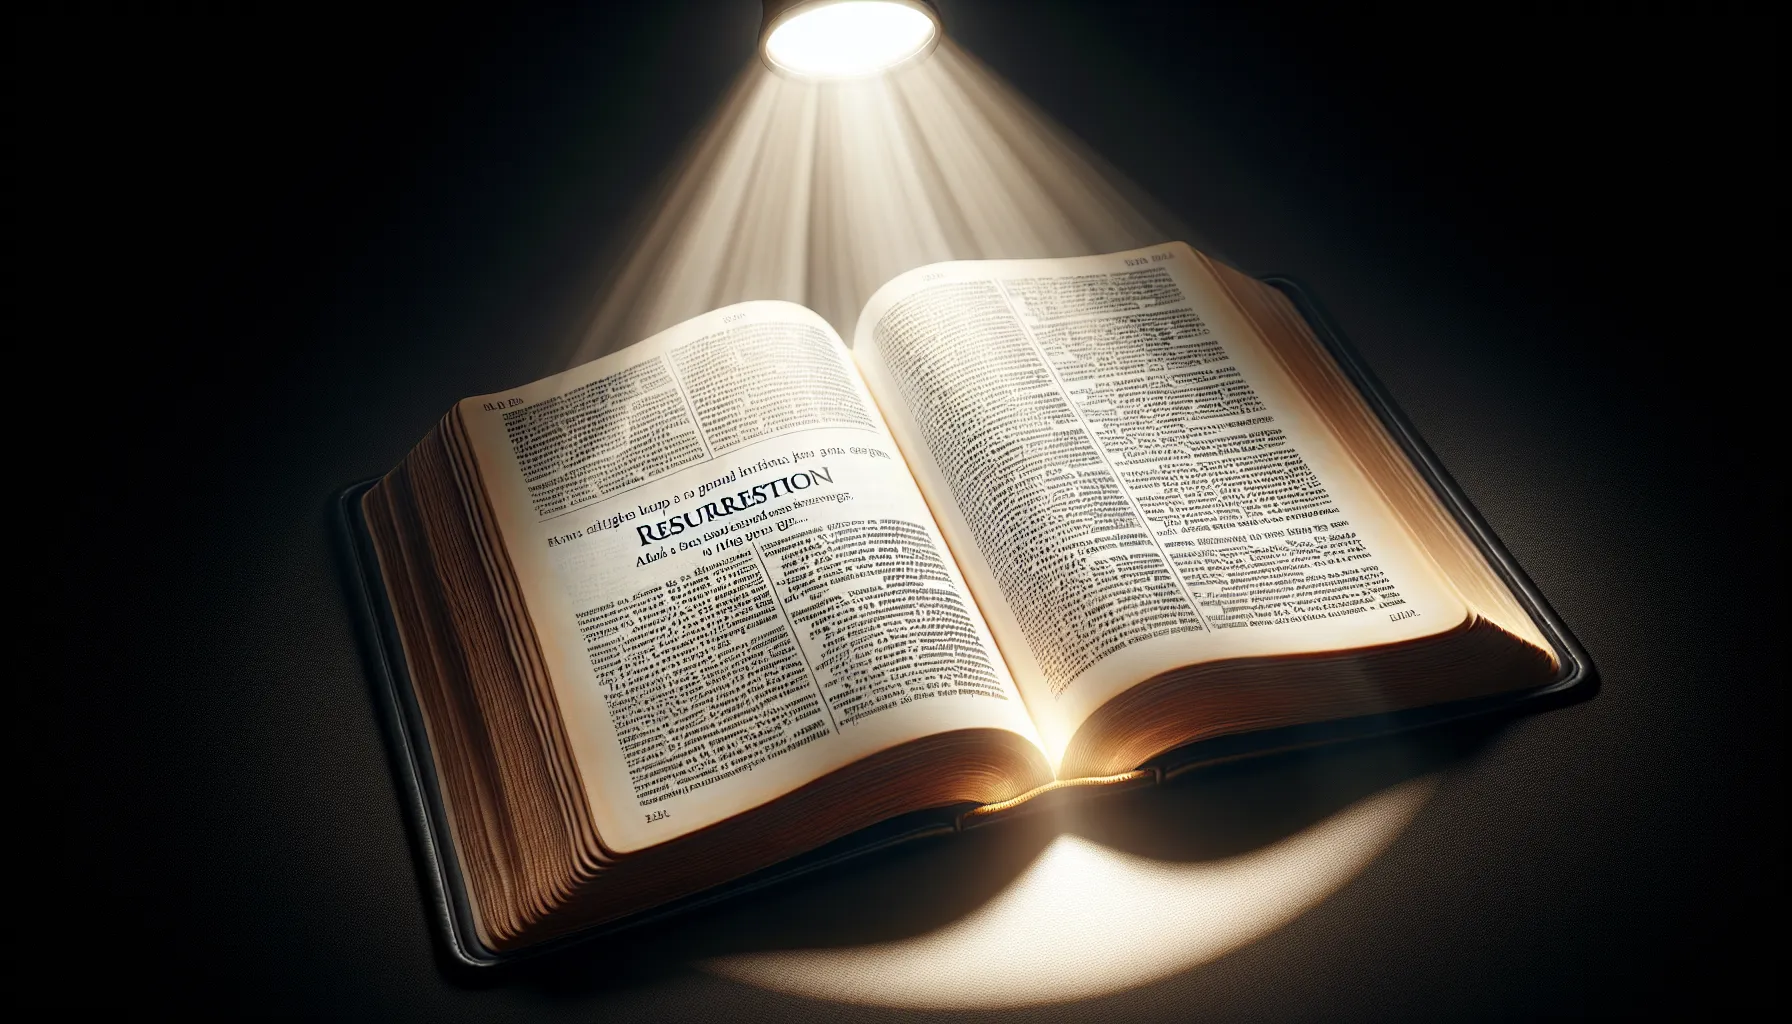 Imagen de un libro sagrado abierto con una luz brillante resaltando un pasaje sobre resurrecciones en la Biblia.